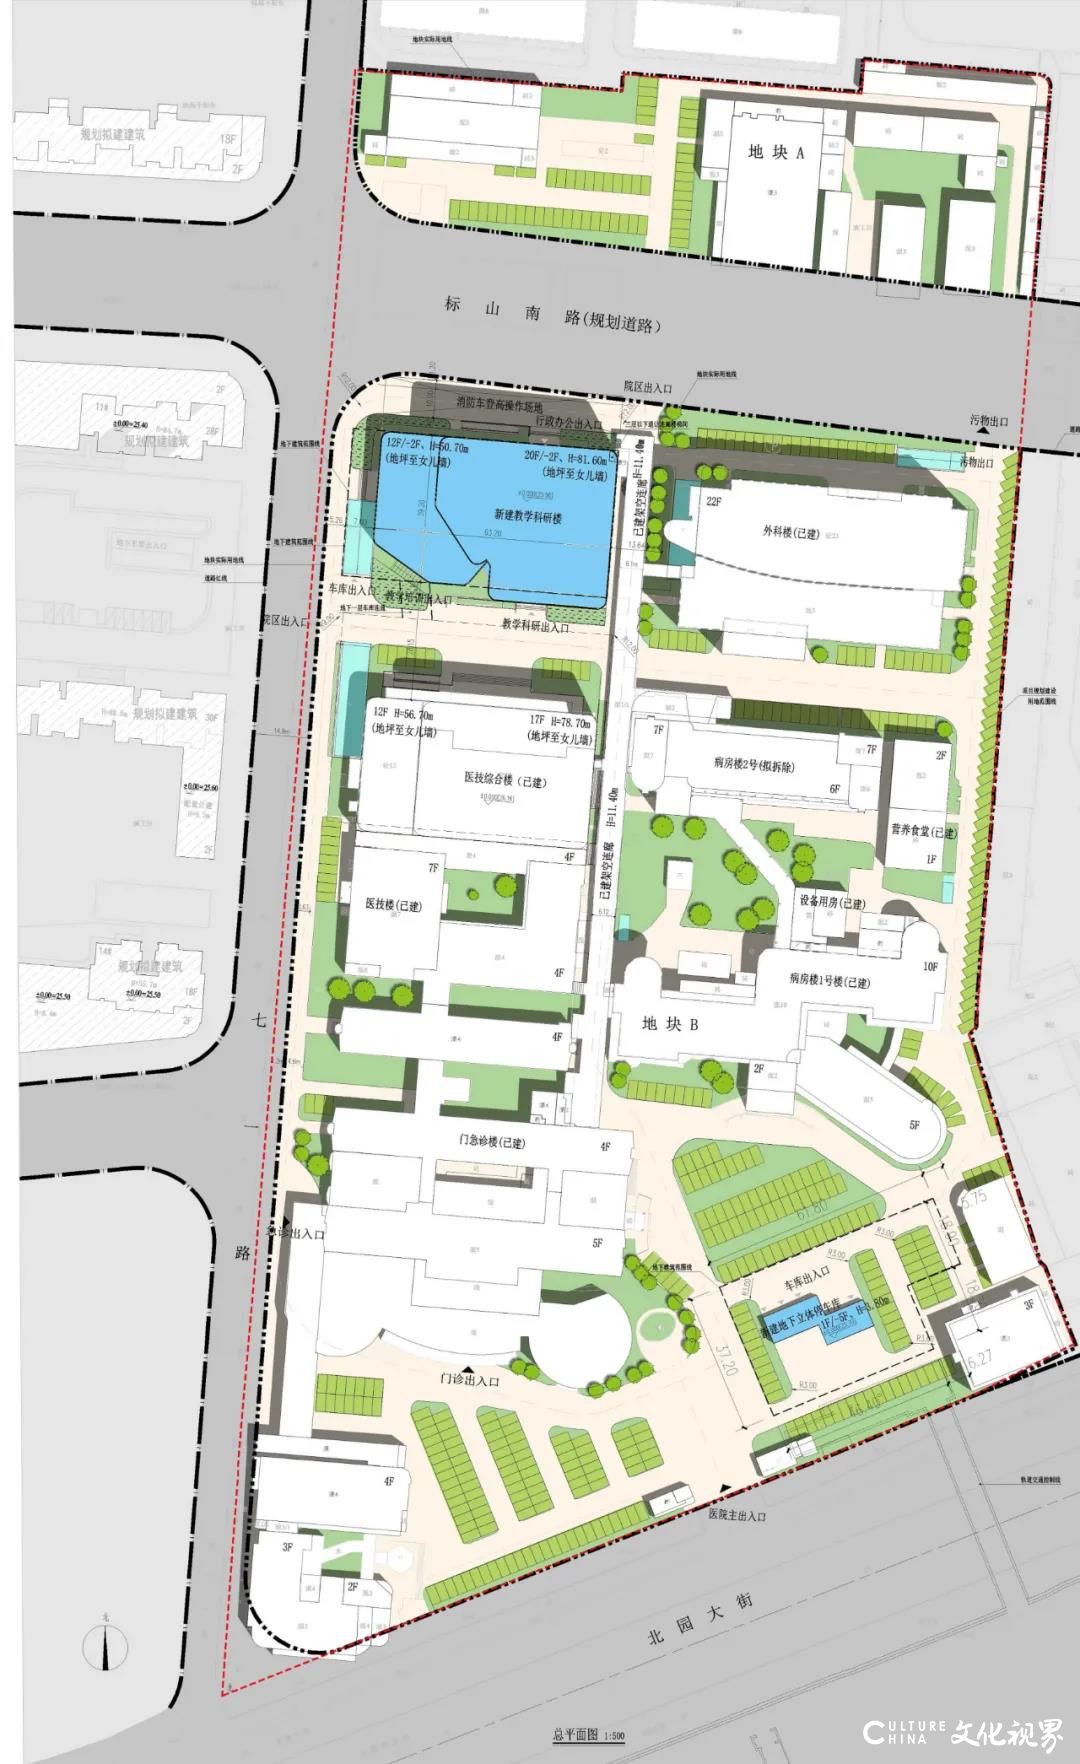 山东大学第二医院将拆除现有办公楼，并在原址新建一栋教学科研楼